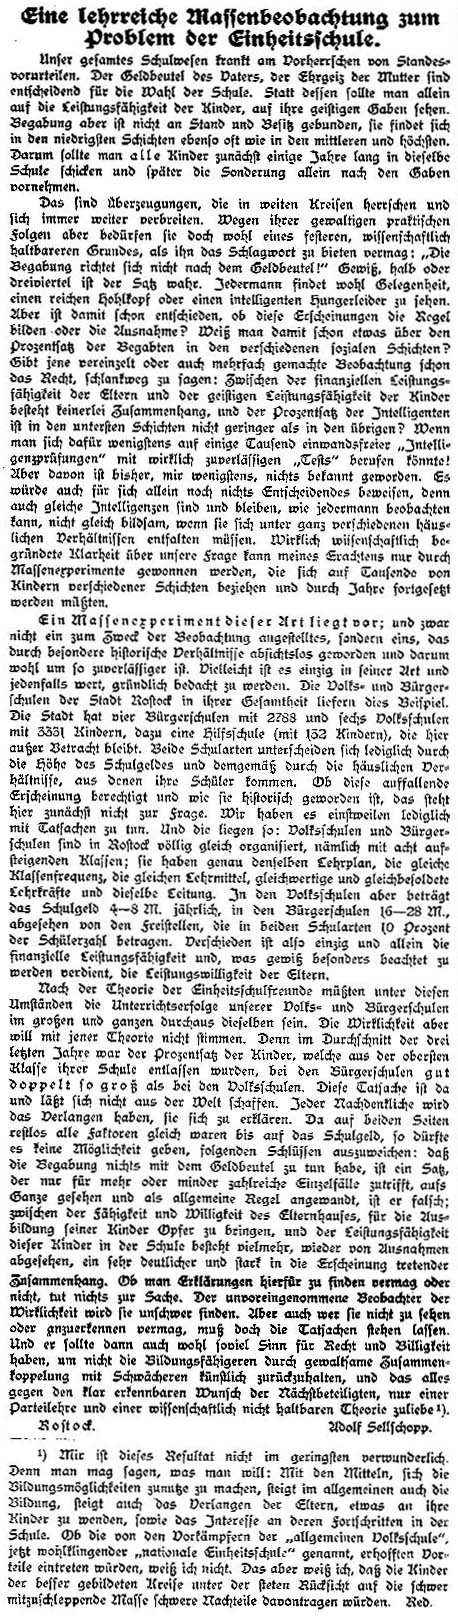 Artikel vom 13. Februar 1914